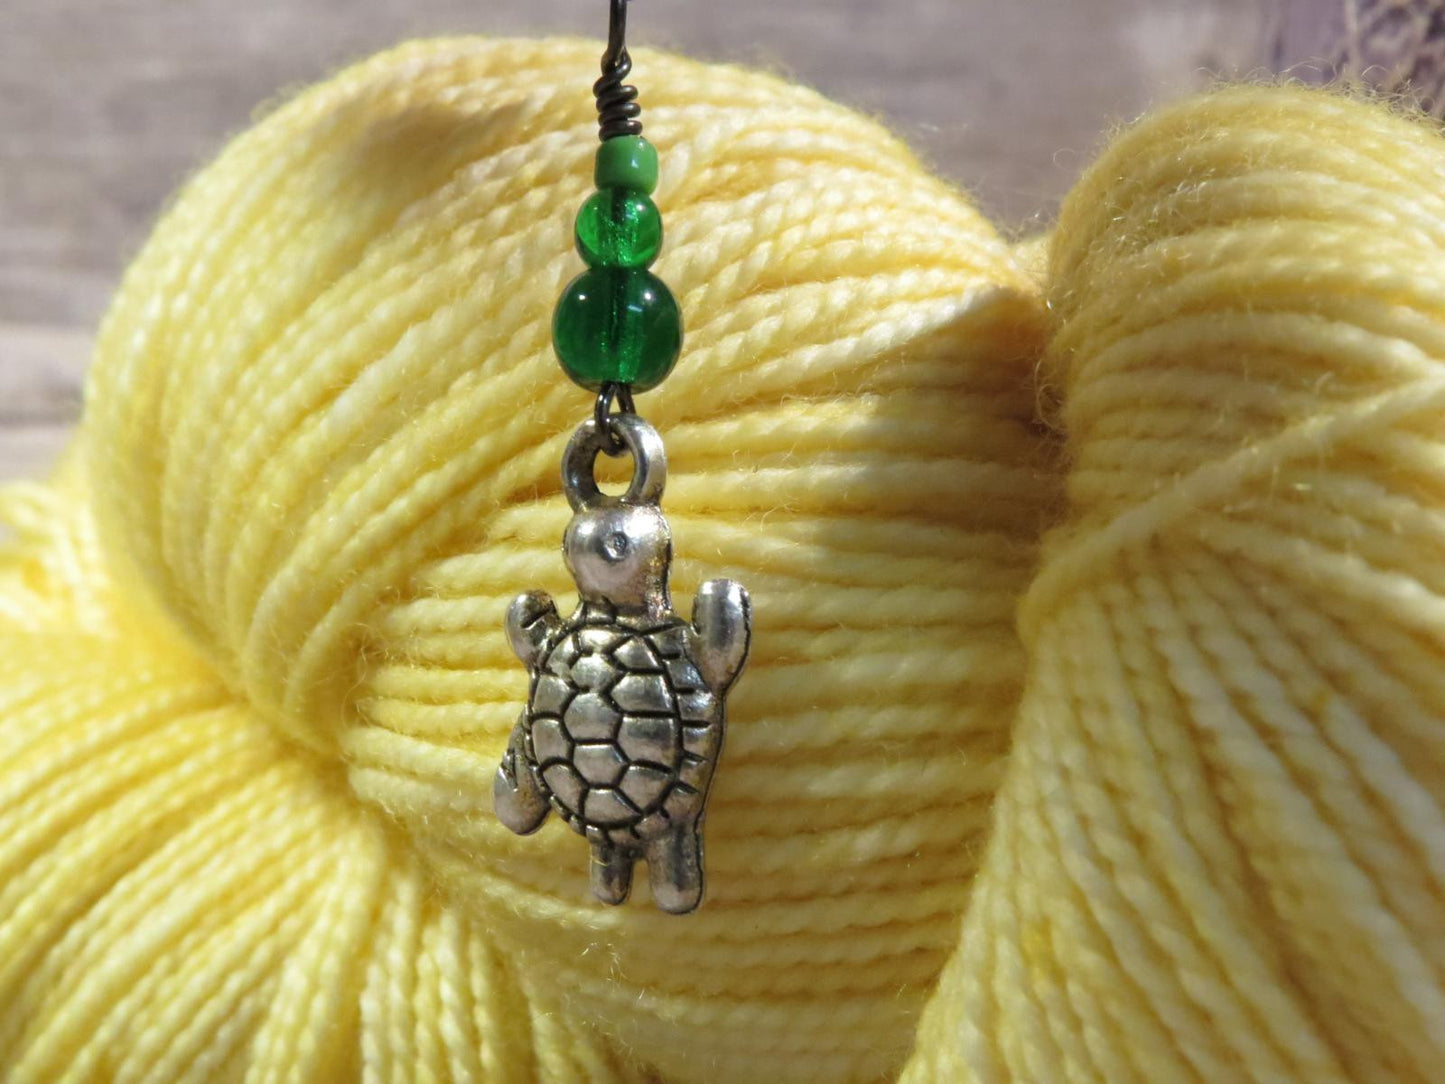 Turtle stitch marker set in green